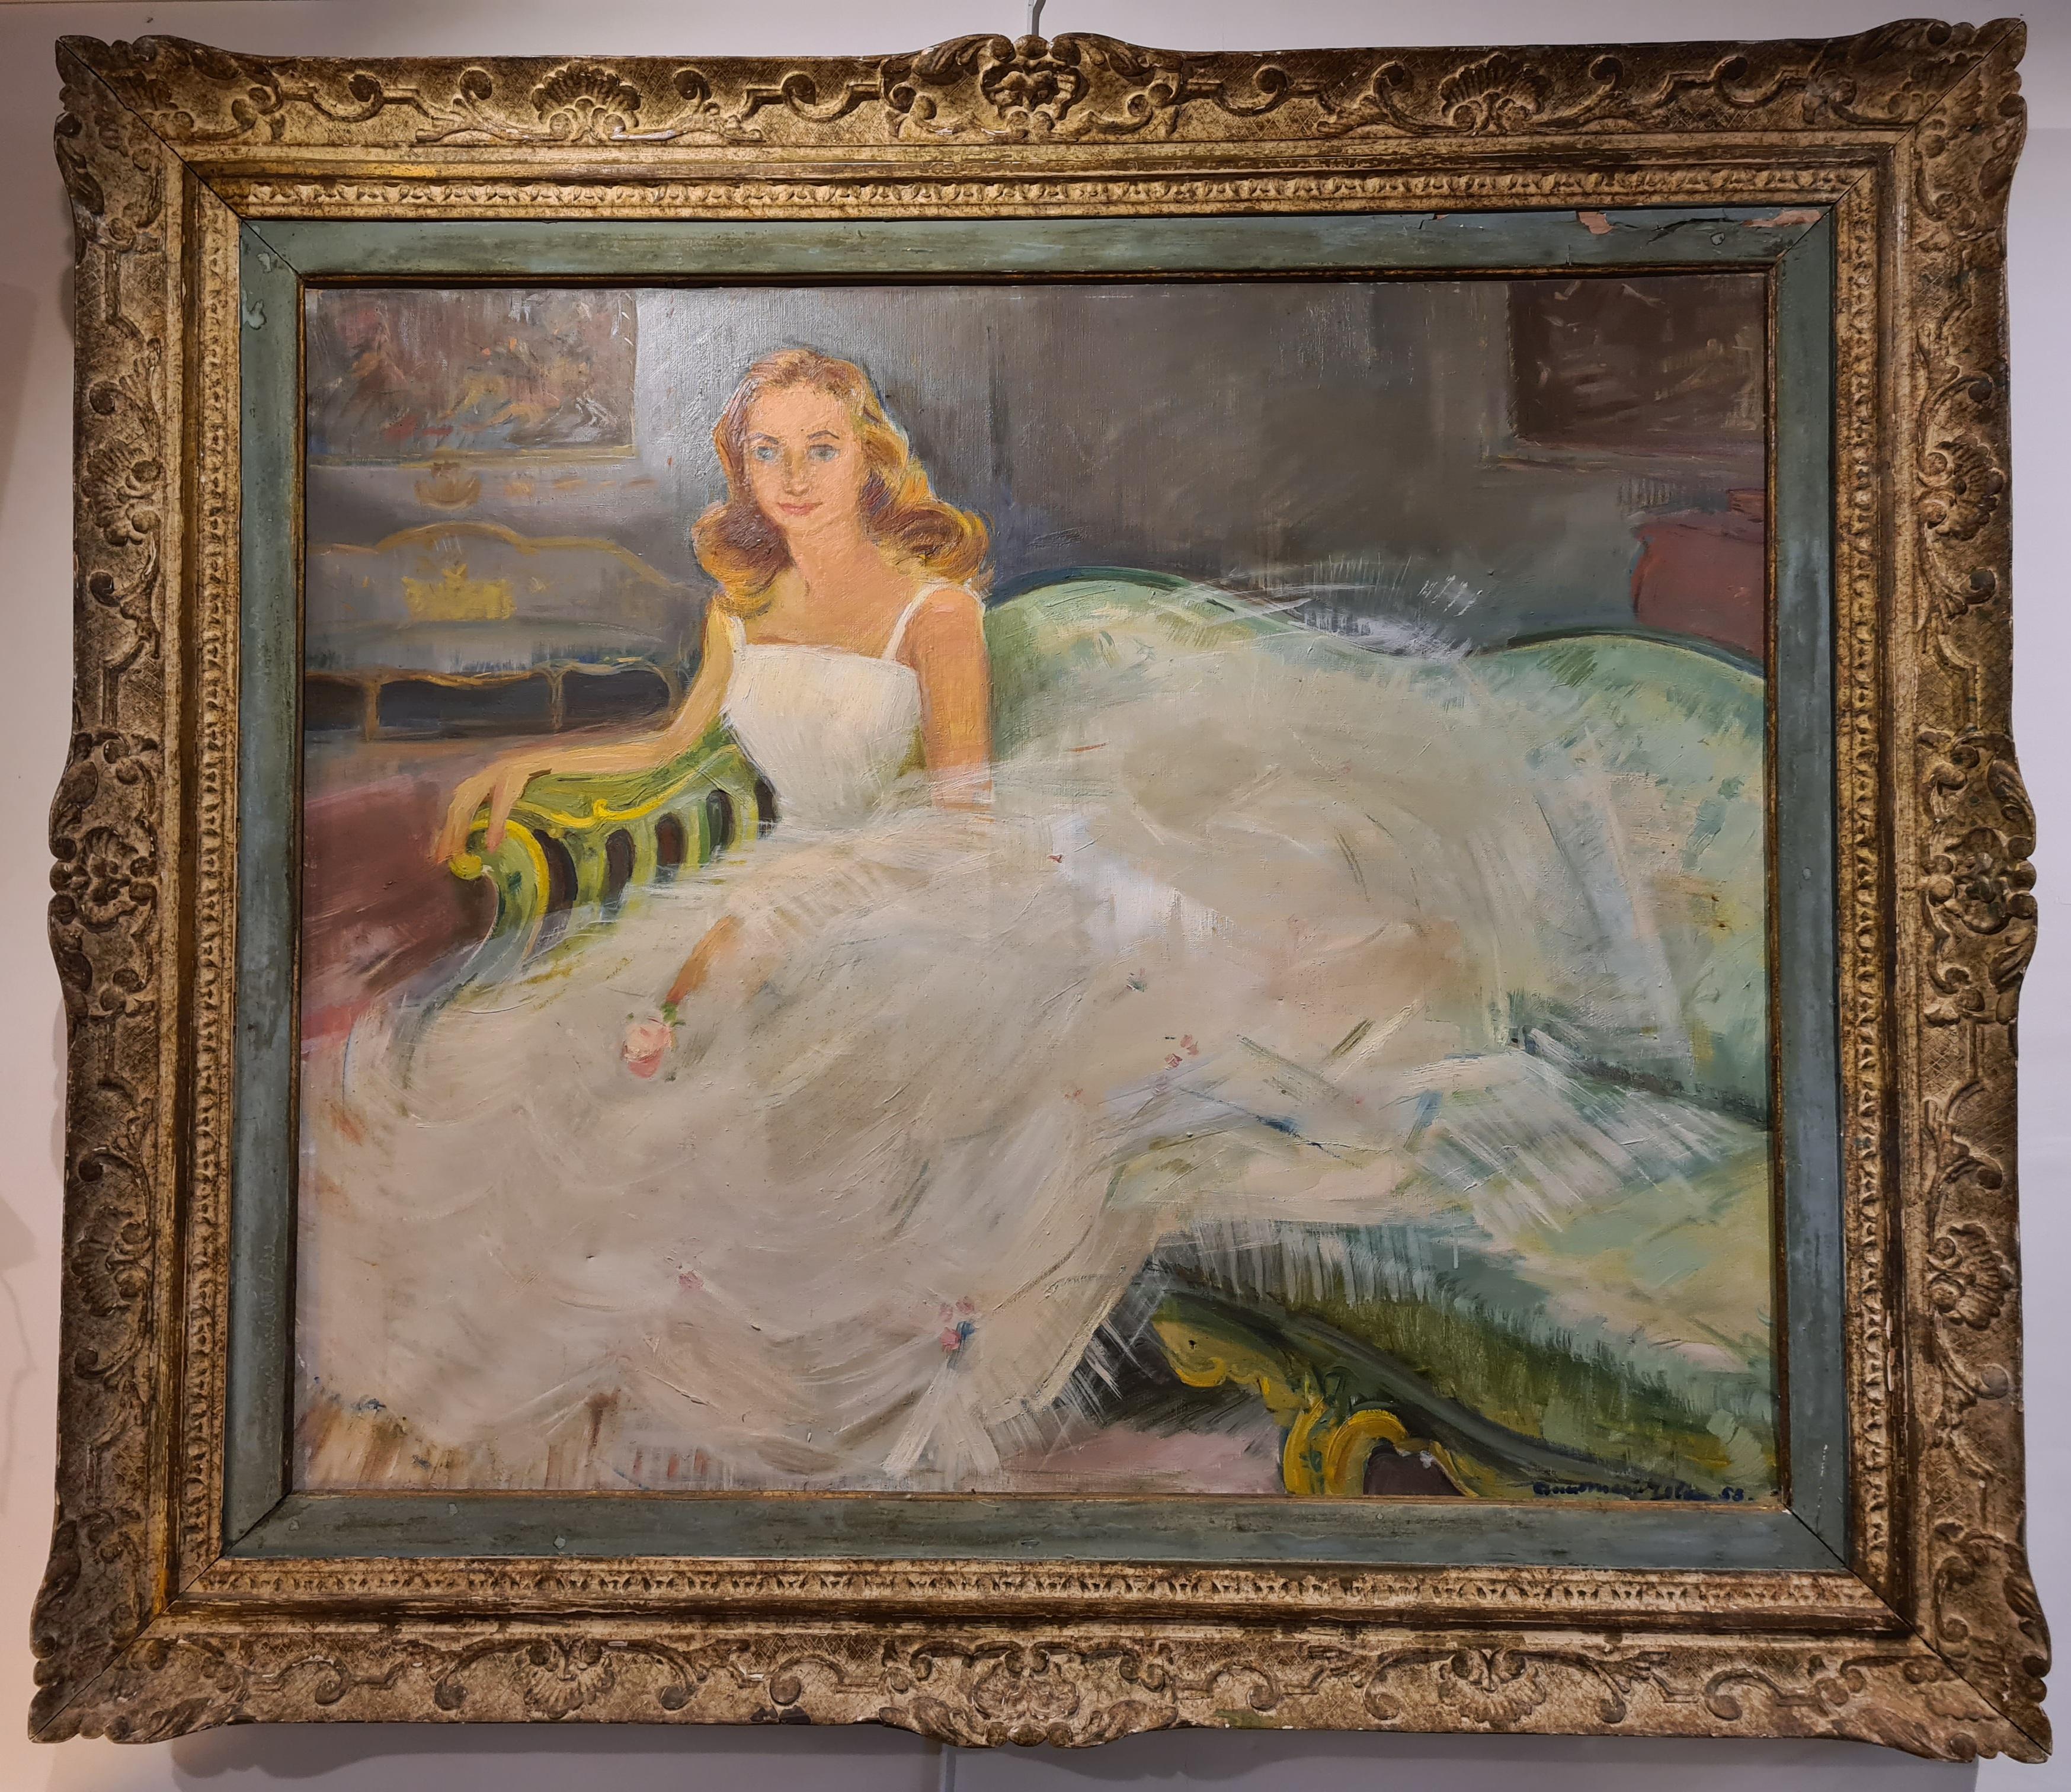 Portrait Painting Anne-Marie Joly - The wedding Dress, portrait de société français des années 1950 à grande échelle